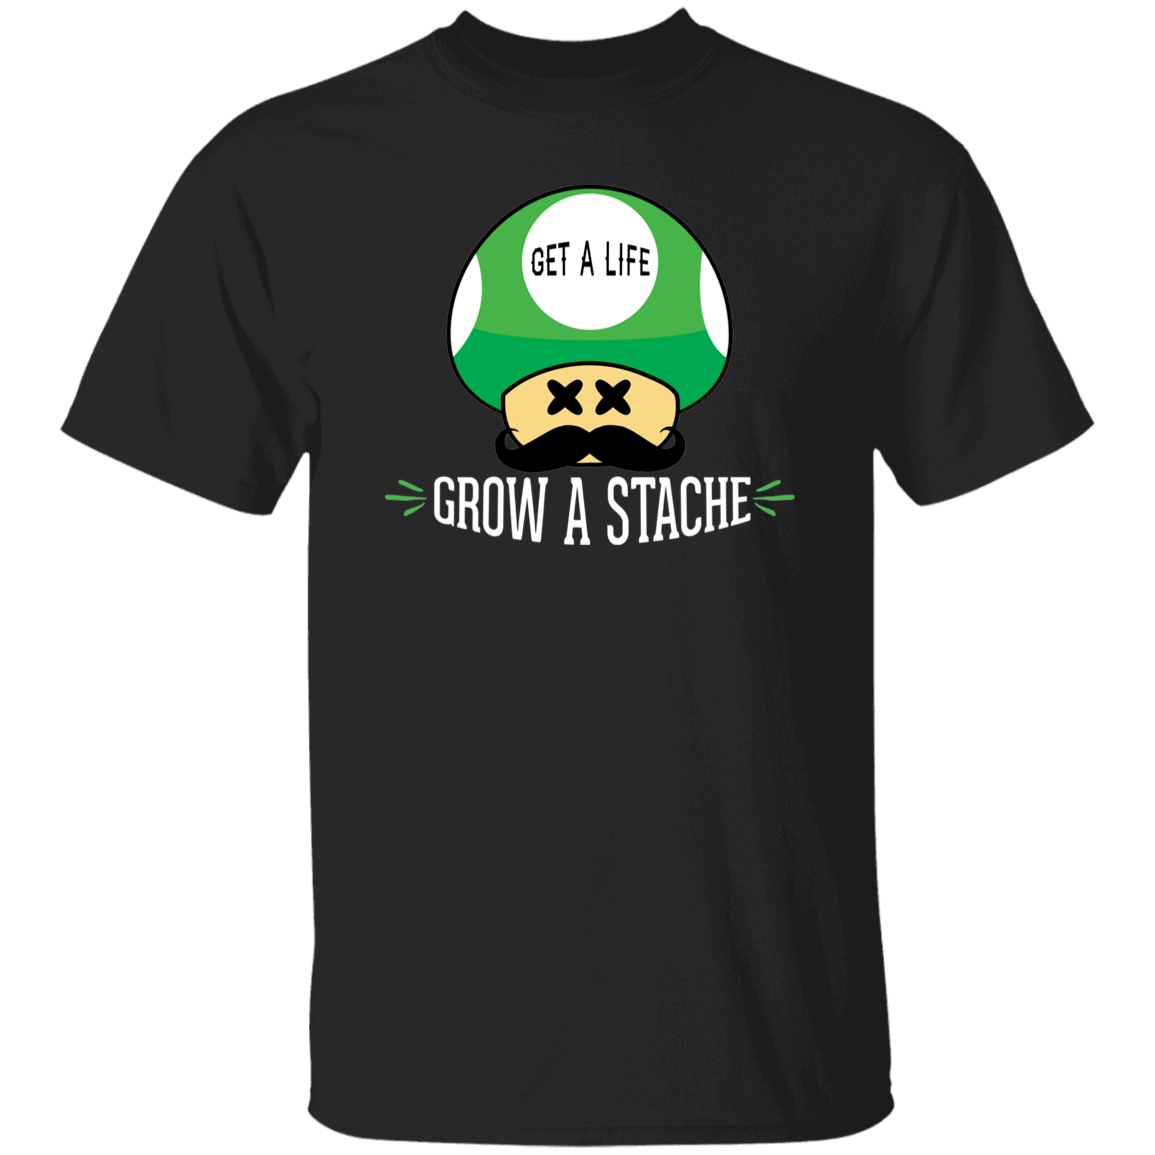 Get a Life, Grow a Stache T-Shirt